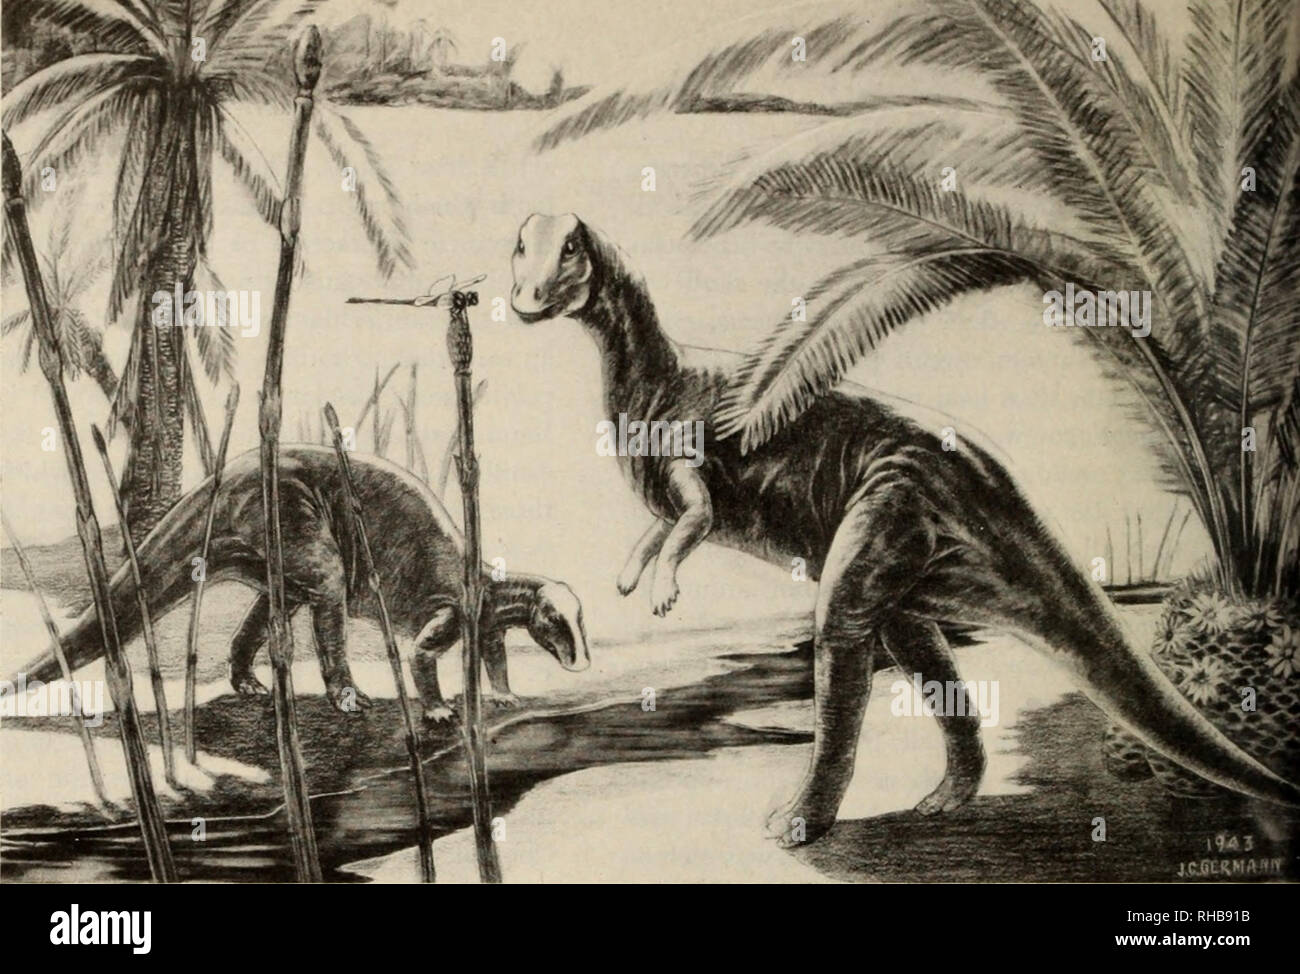 . Il libro di dinosauri : la sentenza di rettili e i loro parenti. I dinosauri; rettili fossili. ^ Camptosaurus: Uno dei primi della ornithischian dinosaurs, che visse nel tardo giurassico e inizio la cre- taceous volte. Tutte le successive ar- mored dinosauri, anatra-fatture e cornuto forme erano derivate da un- cestors qualcosa di simile a questa durata da cinque a otto-pianta del piede-eating dinosauro. Si prega di notare che queste immagini vengono estratte dalla pagina sottoposta a scansione di immagini che possono essere state migliorate digitalmente per la leggibilità - Colorazione e aspetto di queste illustrazioni potrebbero non perfettamente assomigliano al lavoro originale. Col Foto Stock